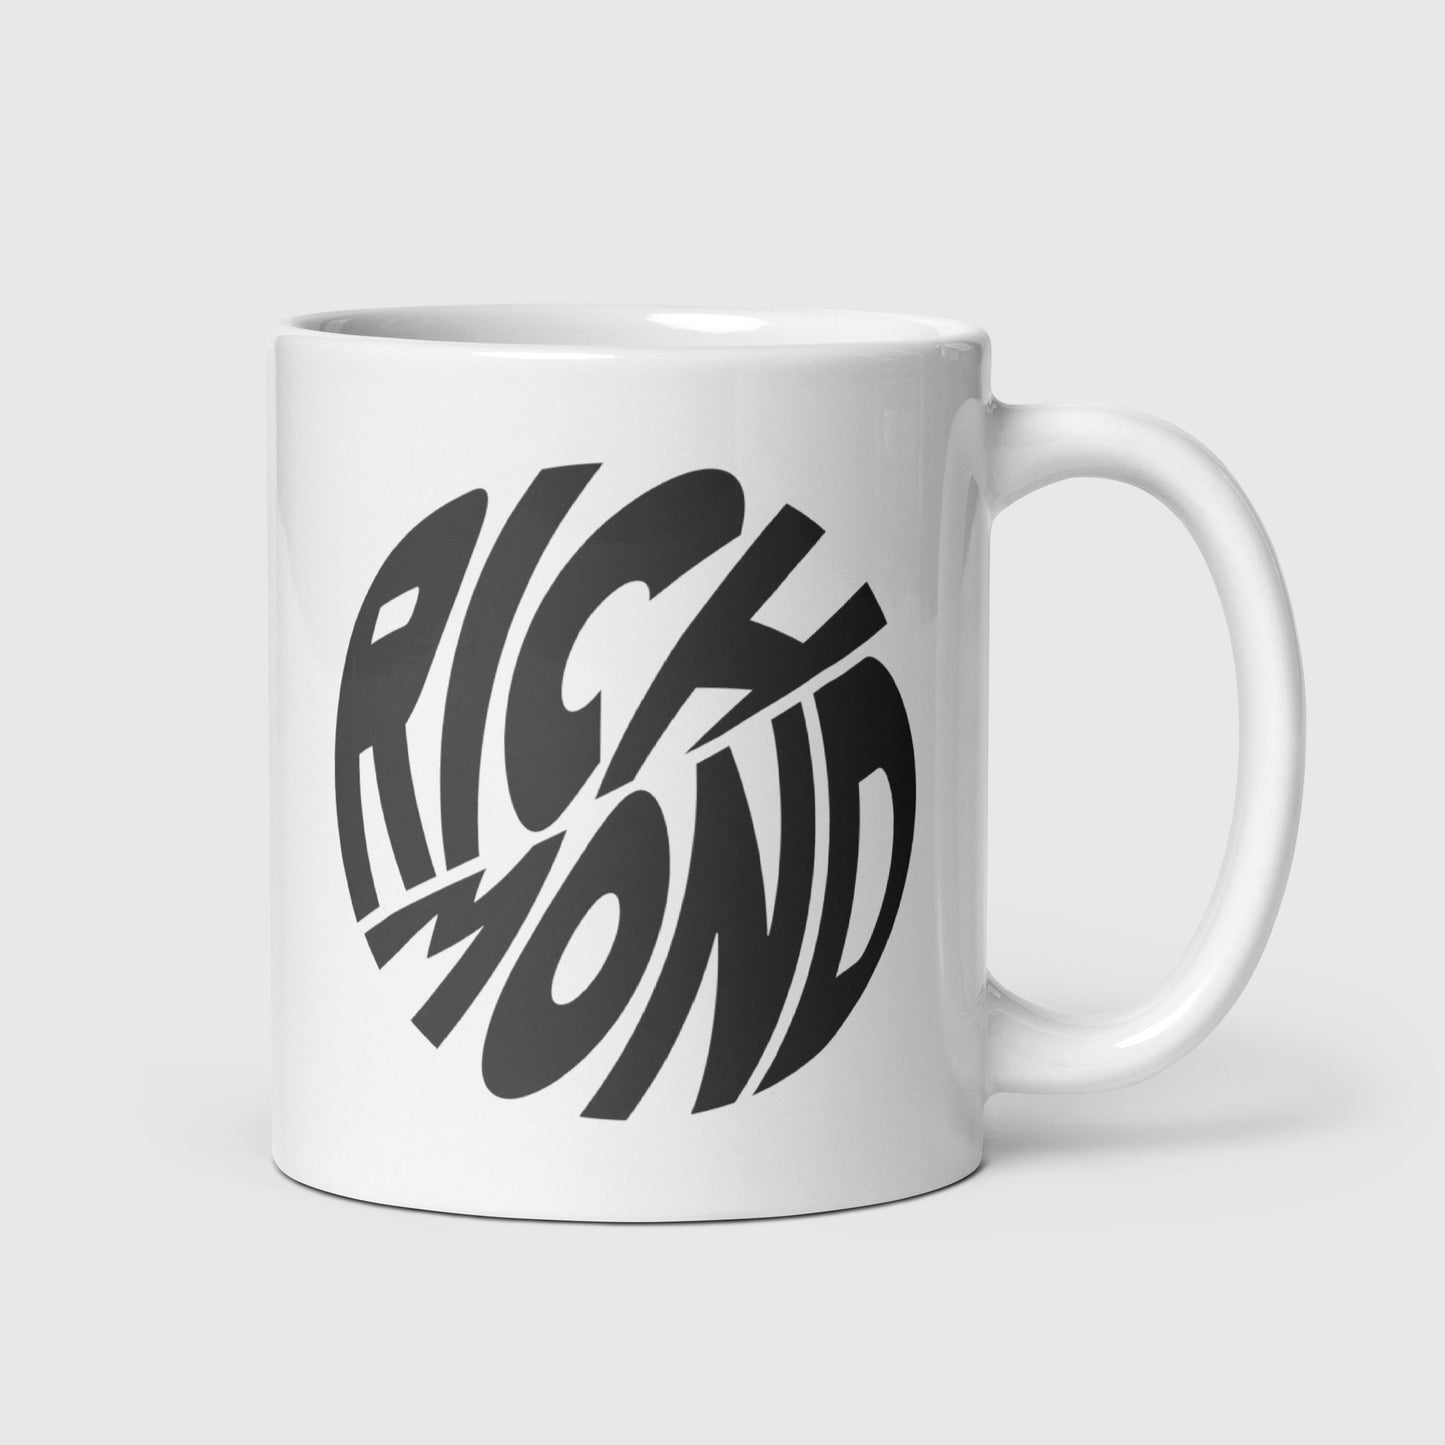 Left-Handed Richmond Mug - Already Richmond - #variant_color#